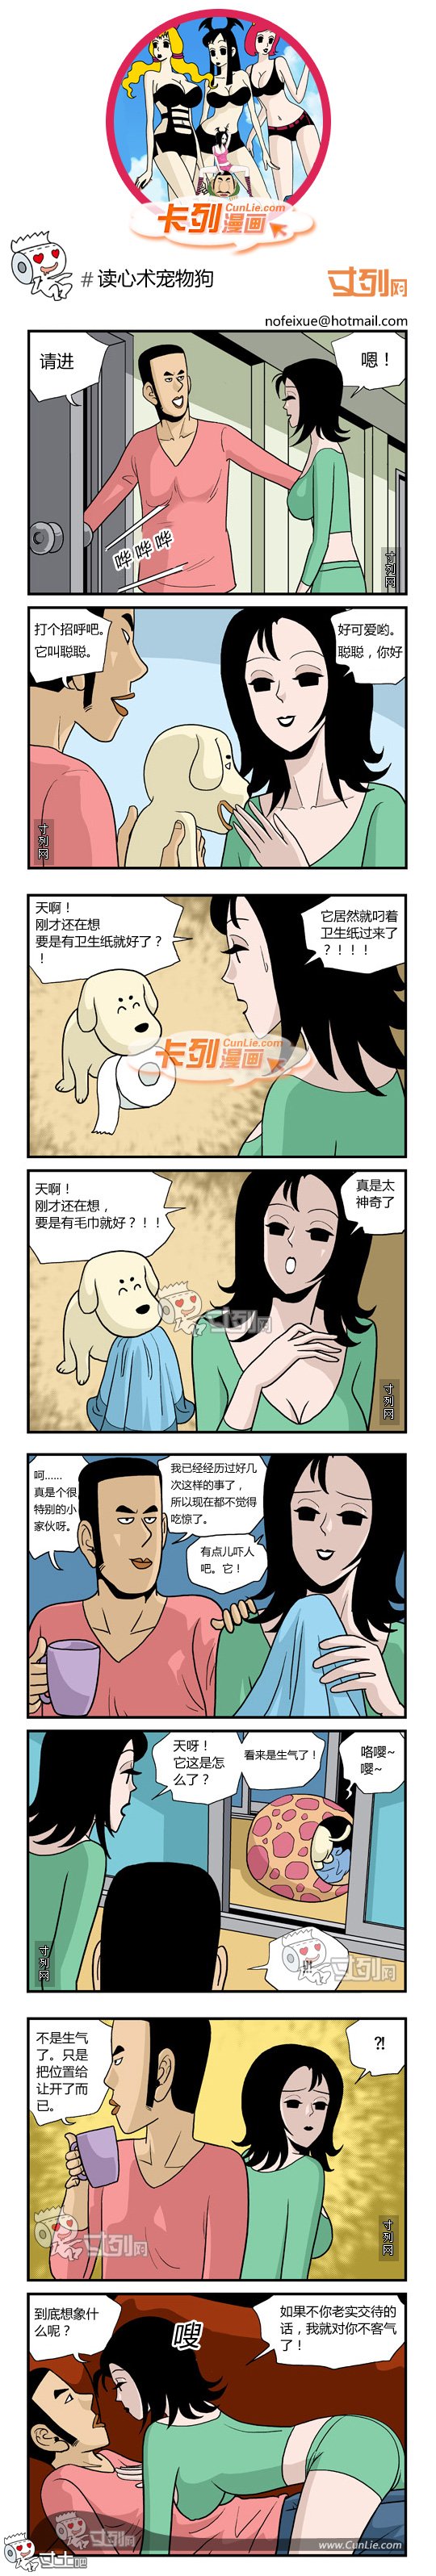 103.卡列漫画读心术宠物狗